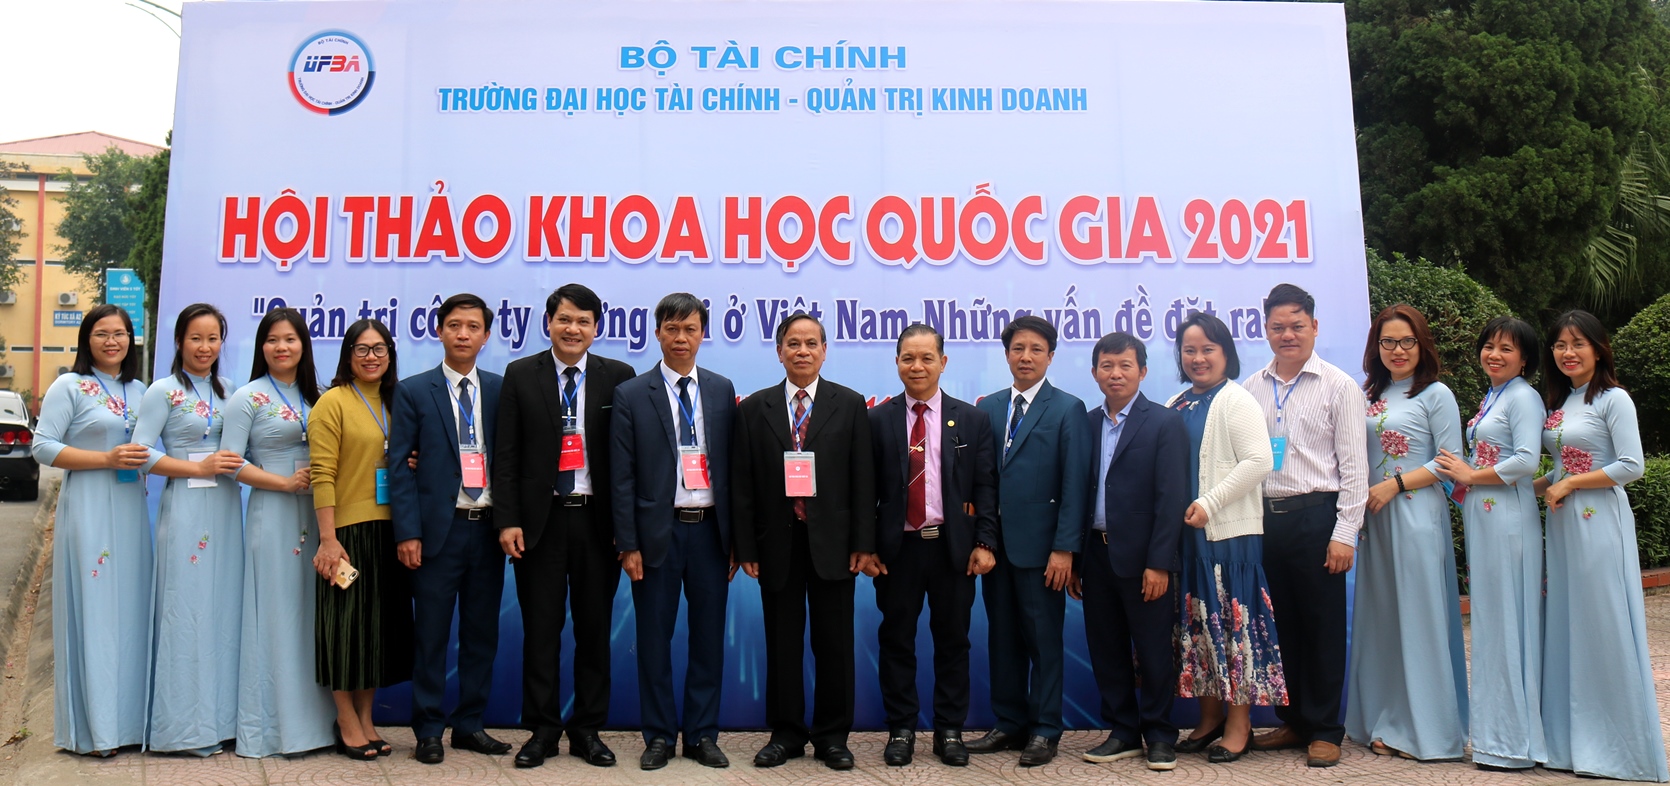 Hội thảo Khoa học quốc gia: “Quản trị công ty đương đại ở Việt Nam - Những vấn đề đặt ra”